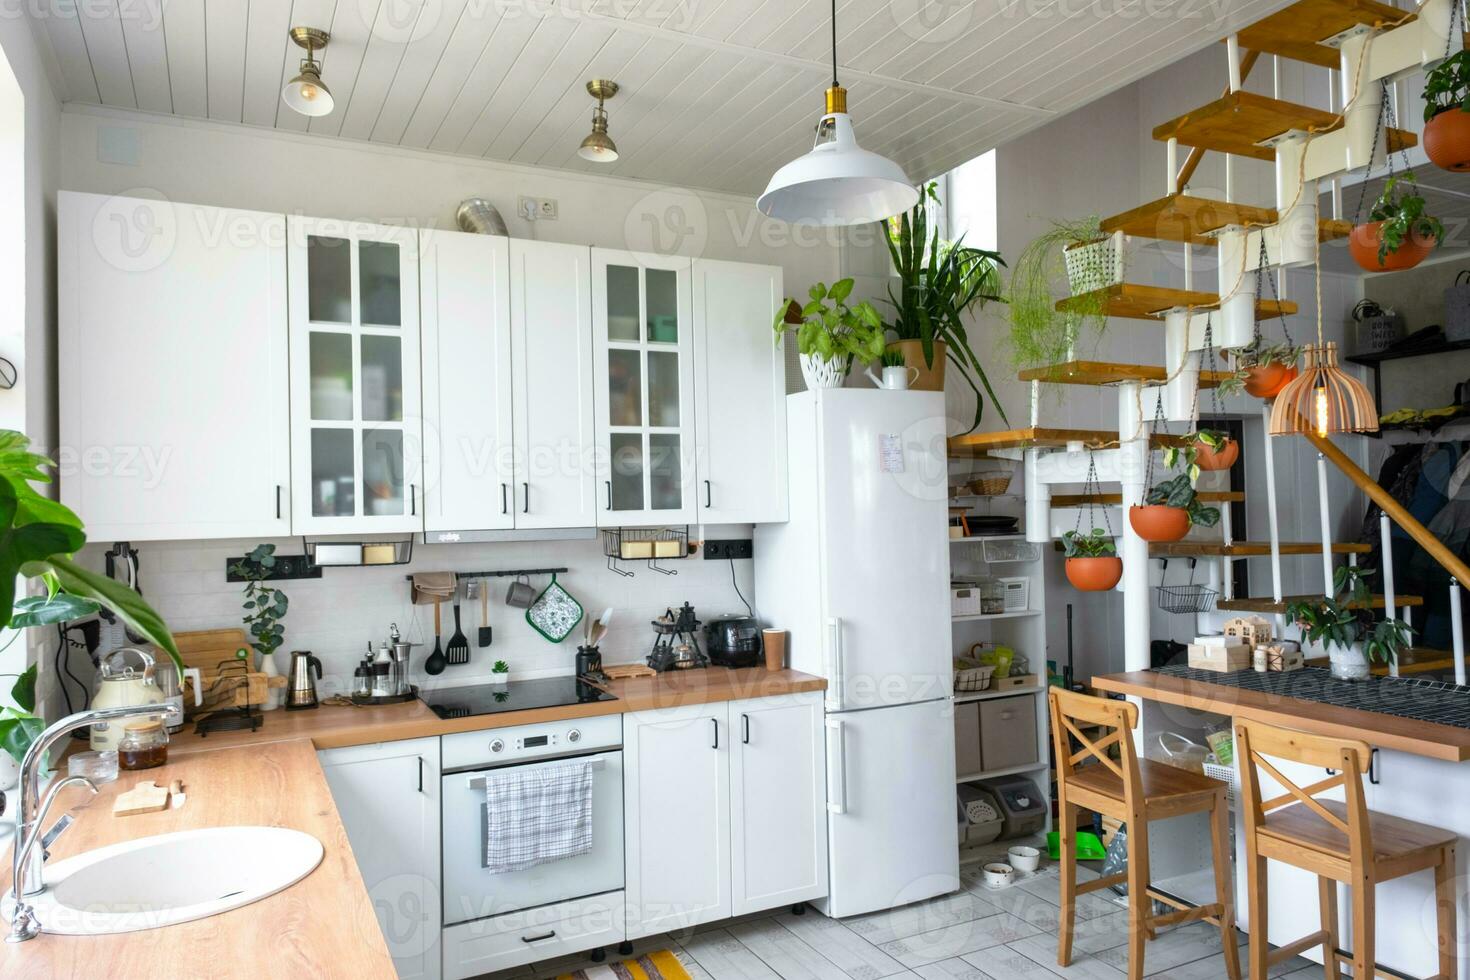 a geral plano do uma luz branco moderno rústico cozinha com uma modular metal Escadaria decorado com em vaso plantas. interior do uma casa com plantas de casa foto